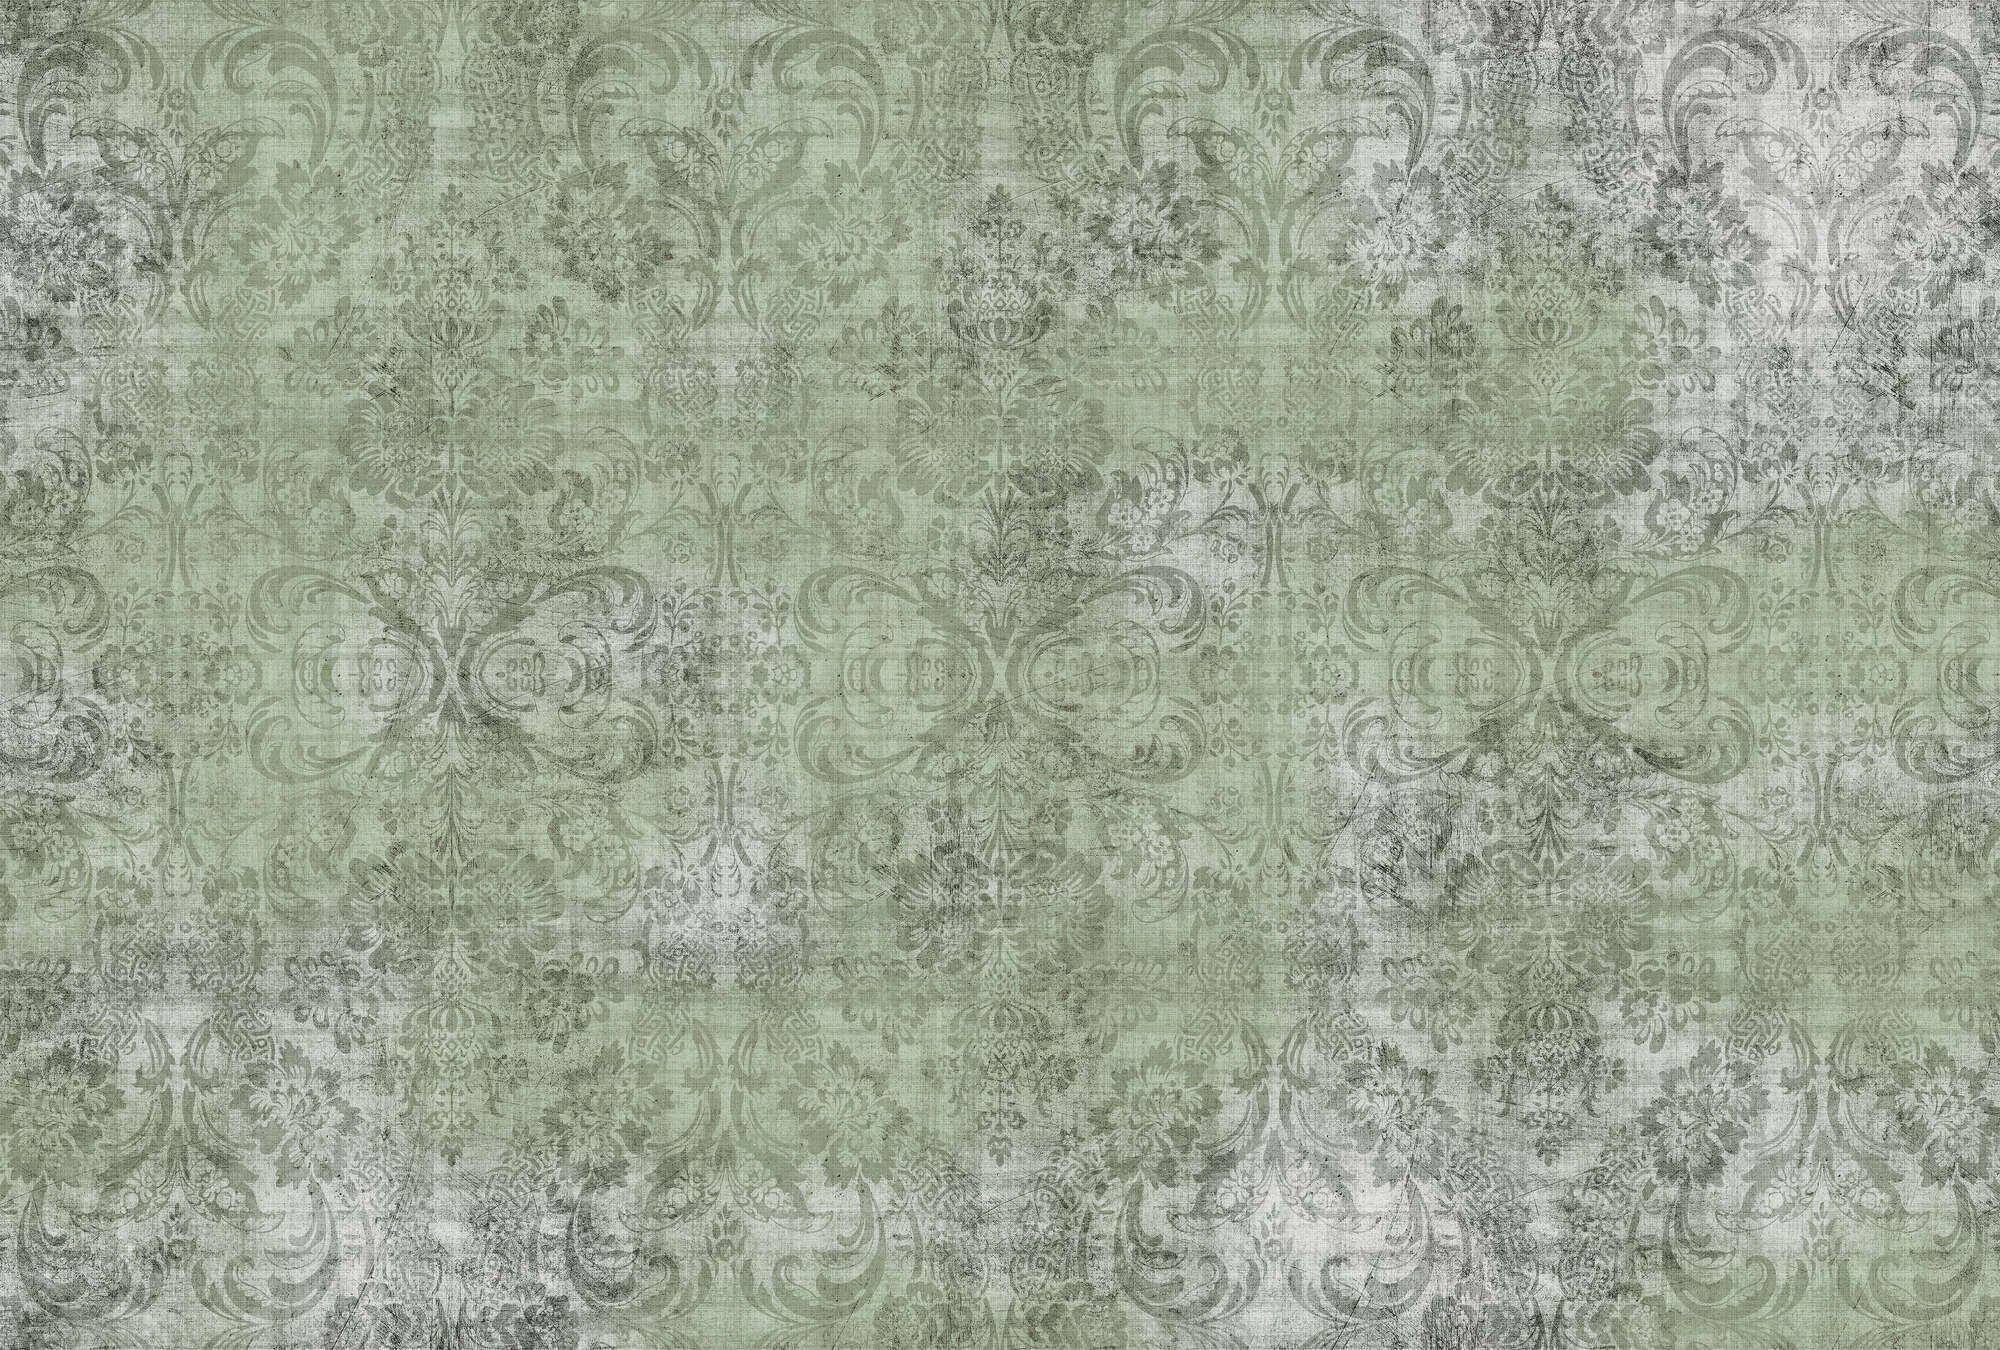             Vecchio damasco 2 - Ornamenti su carta da parati fotografica verde- Natura qualita consistenza in lino naturale - Vello liscio verde | Perla
        